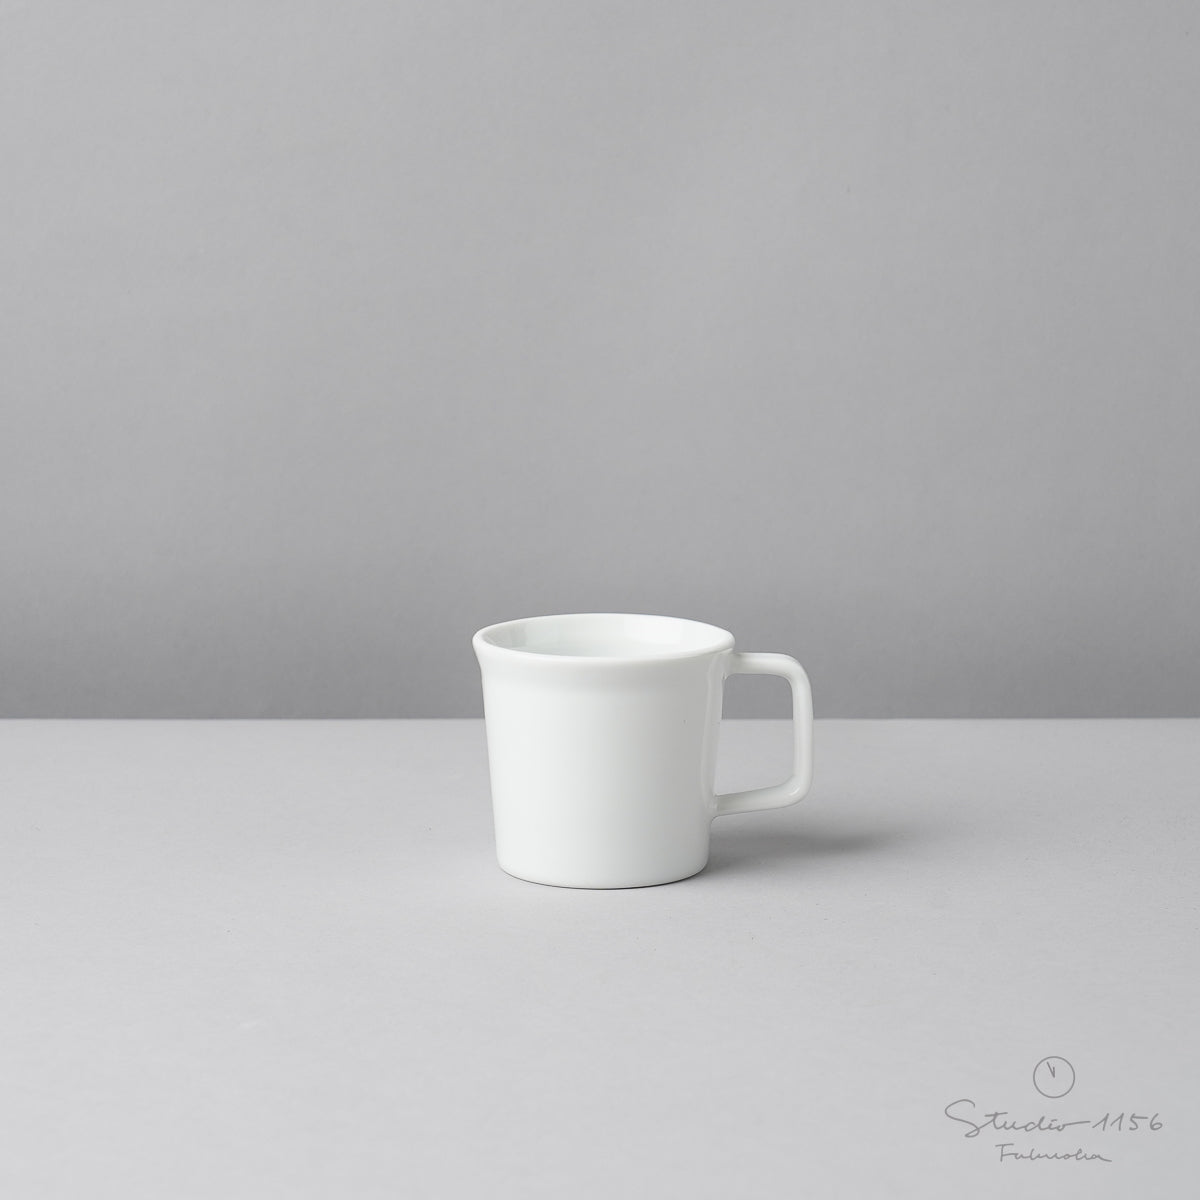 有田焼 エスプレッソカップ w/ Handle / TY EspressoCup Handle 90ml White 1616 / Arita Japan Studio1156